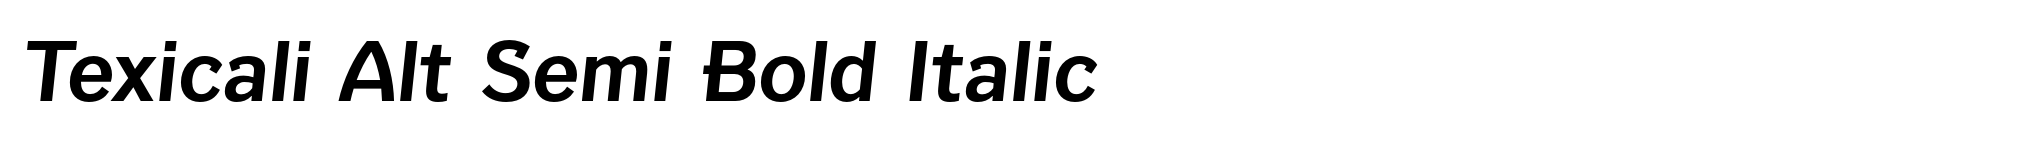 Texicali Alt Semi Bold Italic image